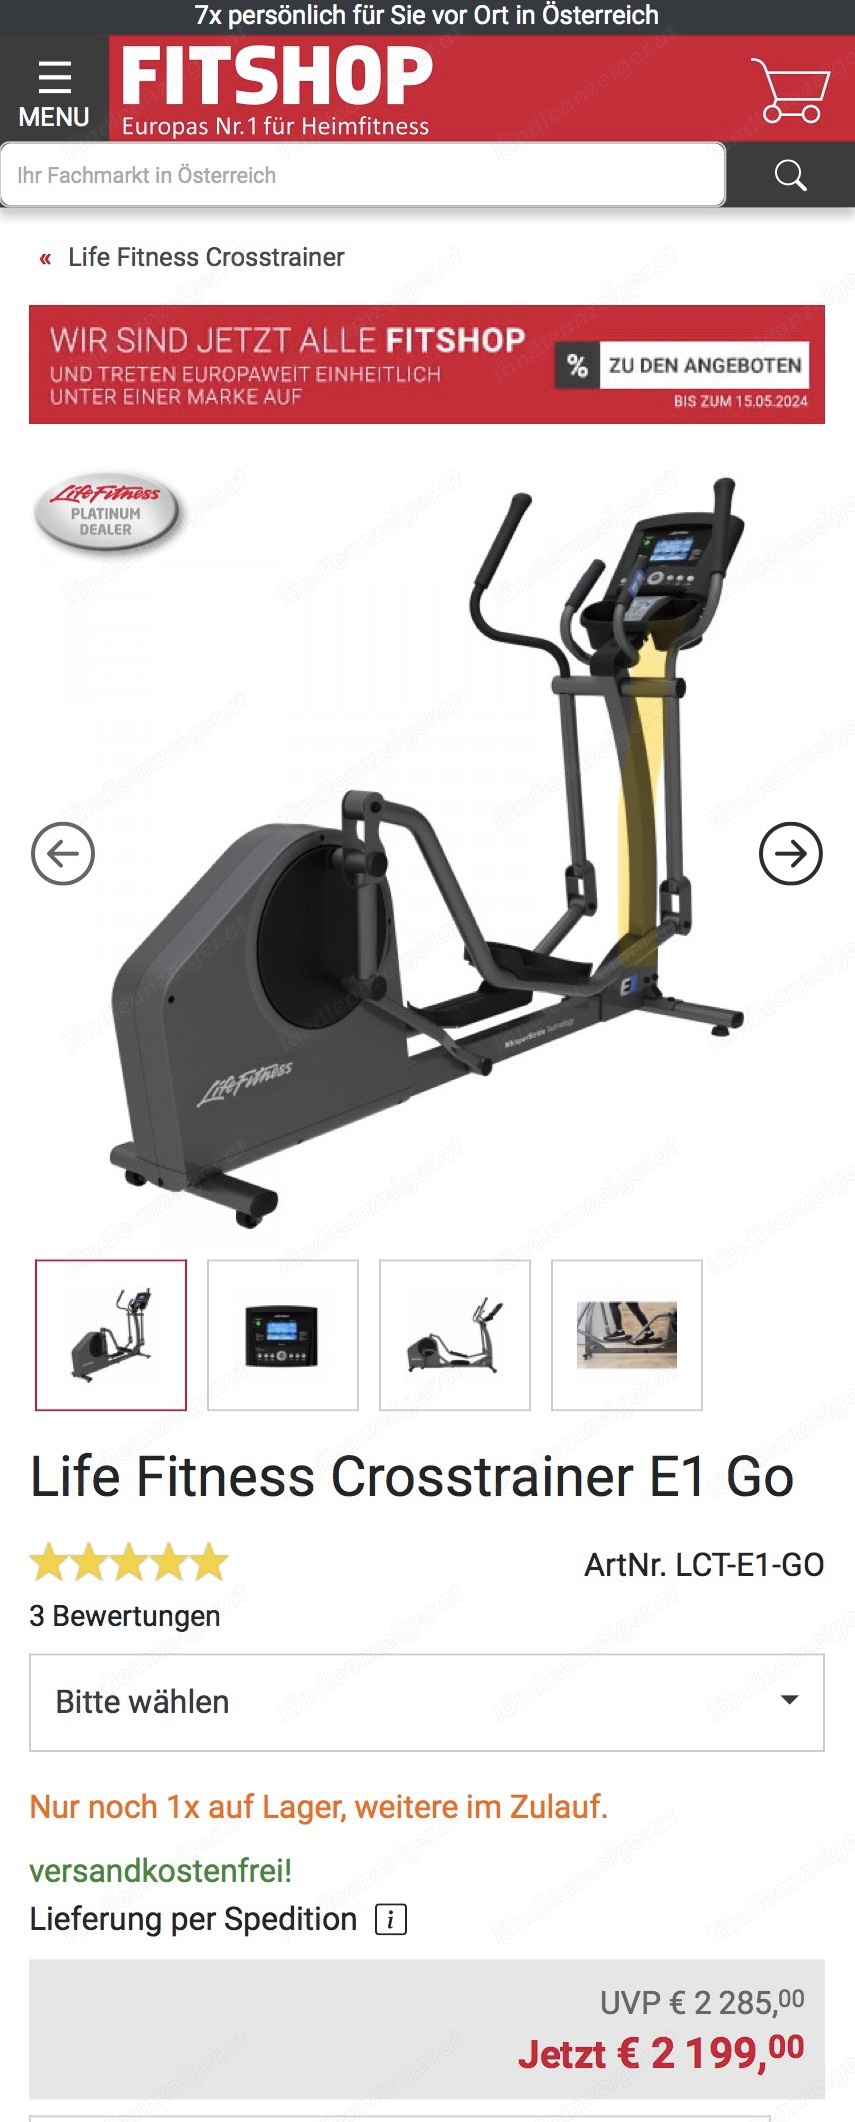 Life Fitness Crosstrainer E1 Go